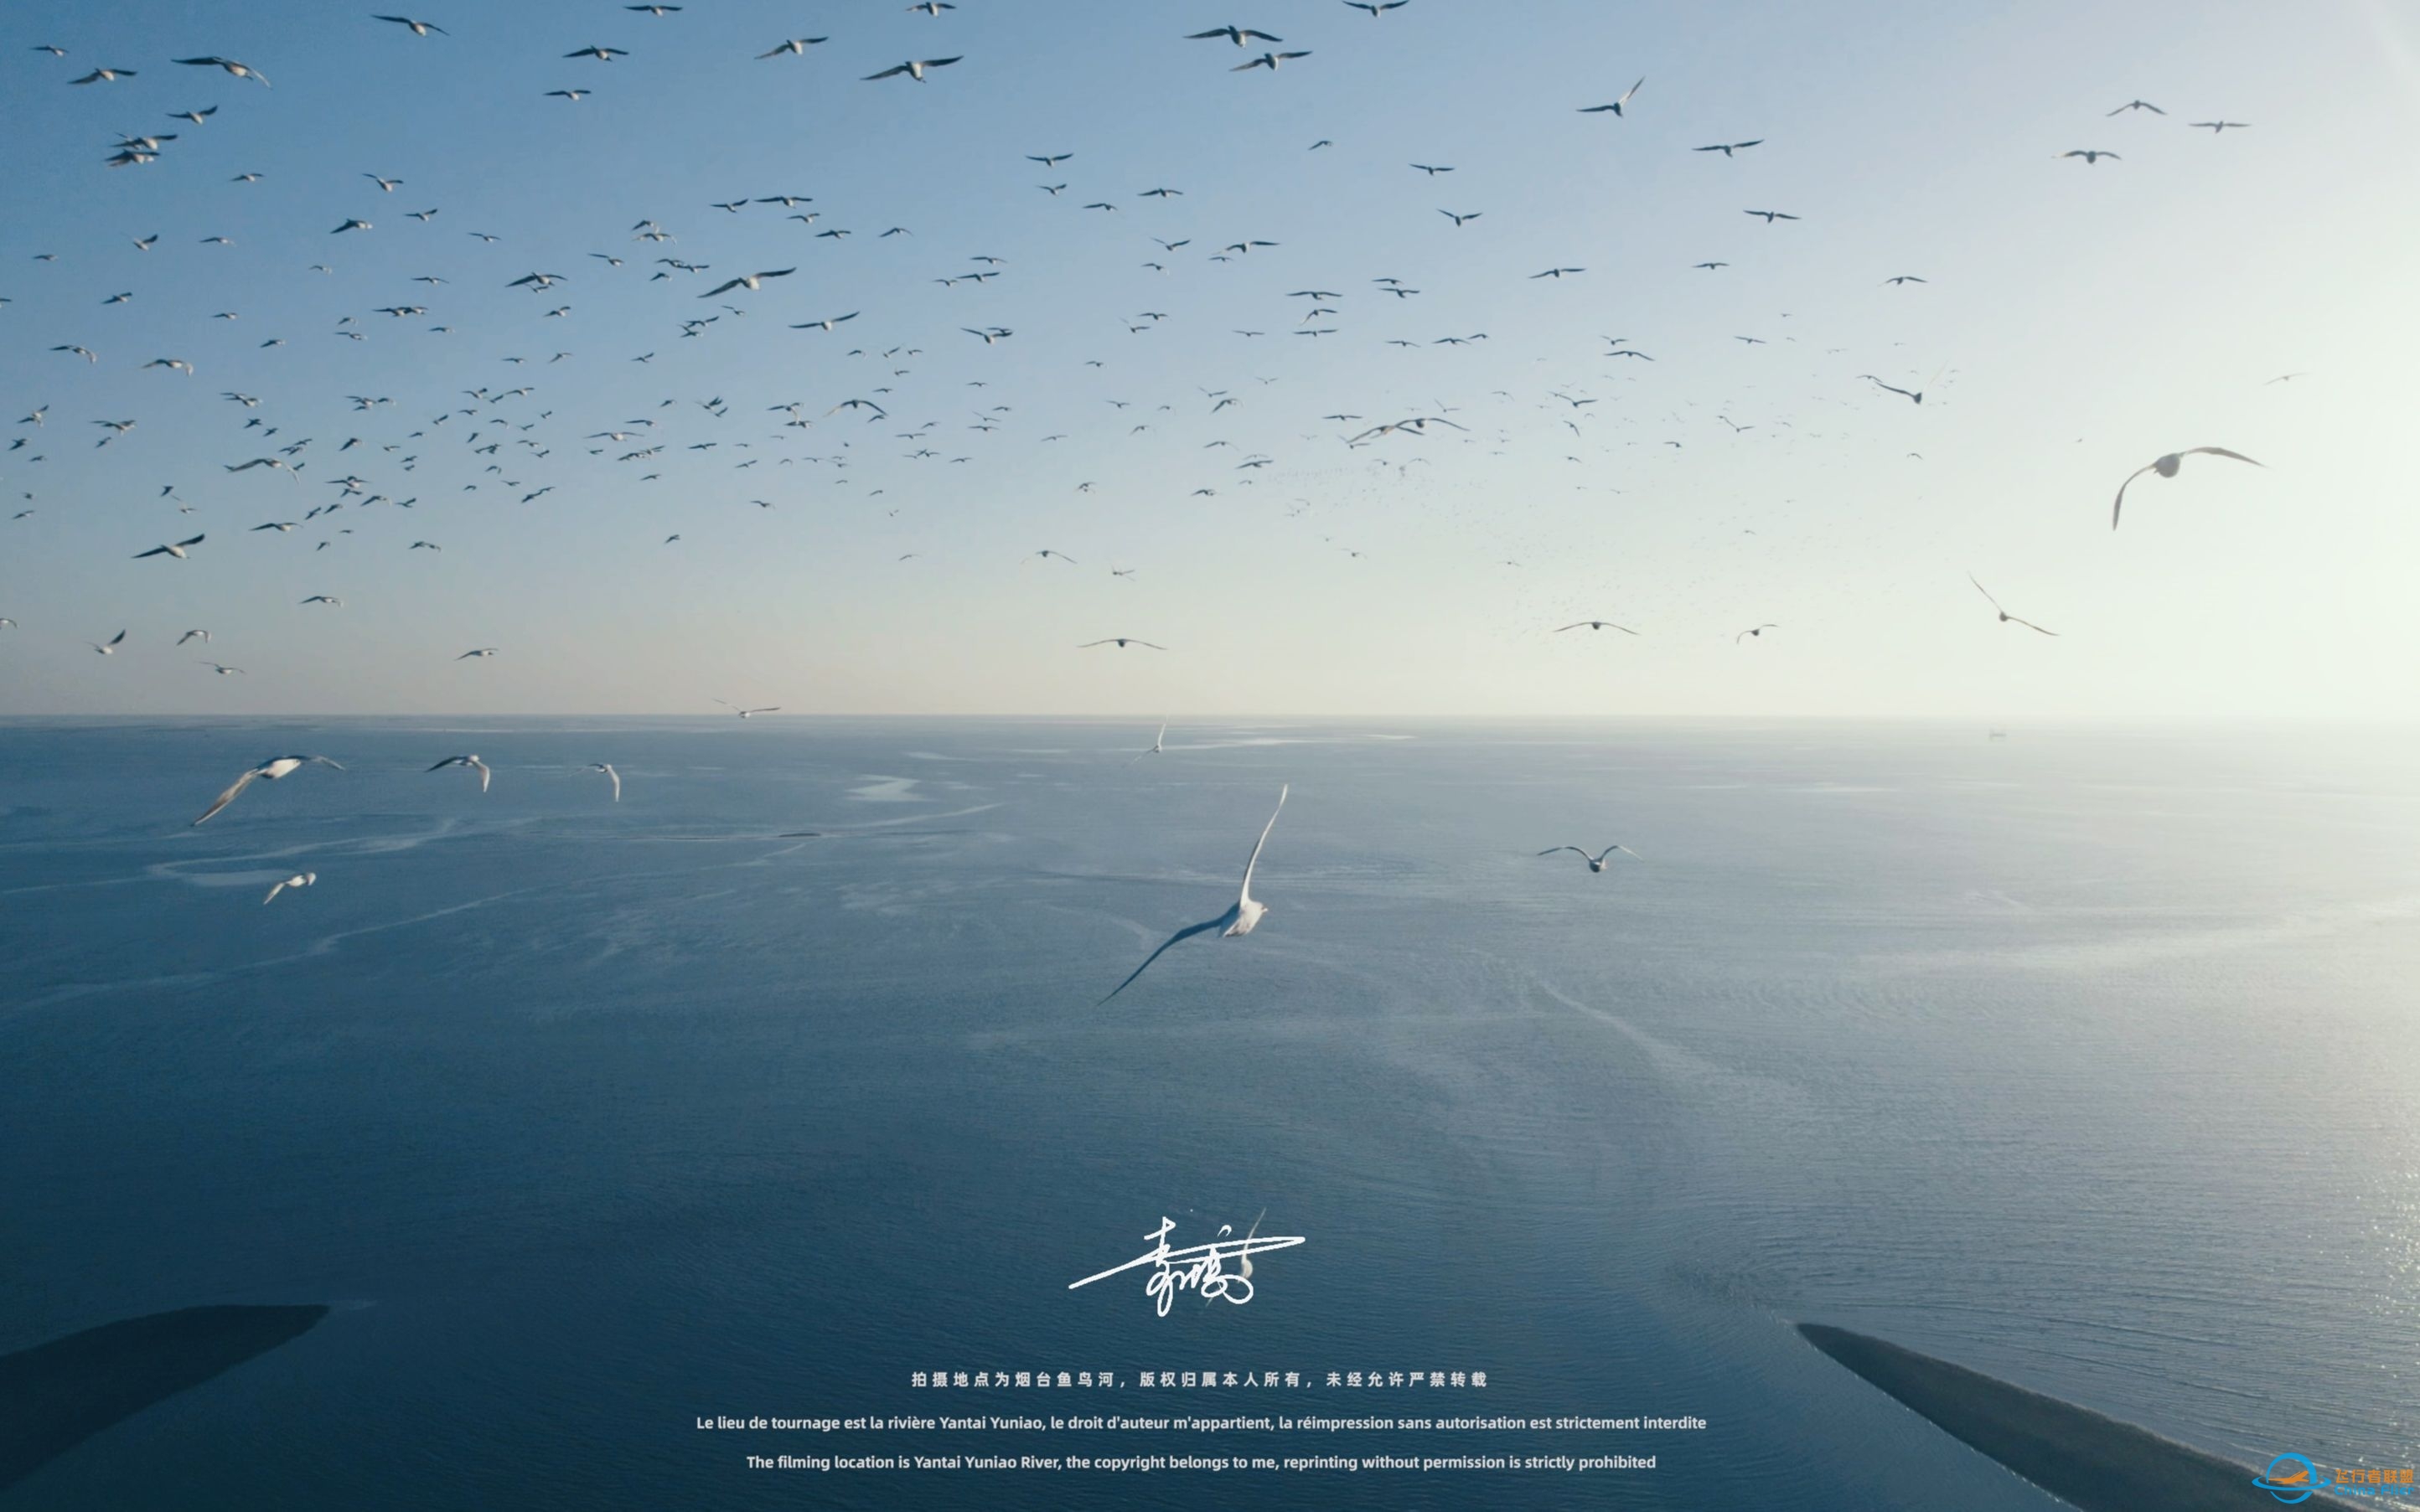 【沉浸式飞行】[DJI AIR 2S]一次跟海鸥一起的沉浸式飞行体验~-5760 